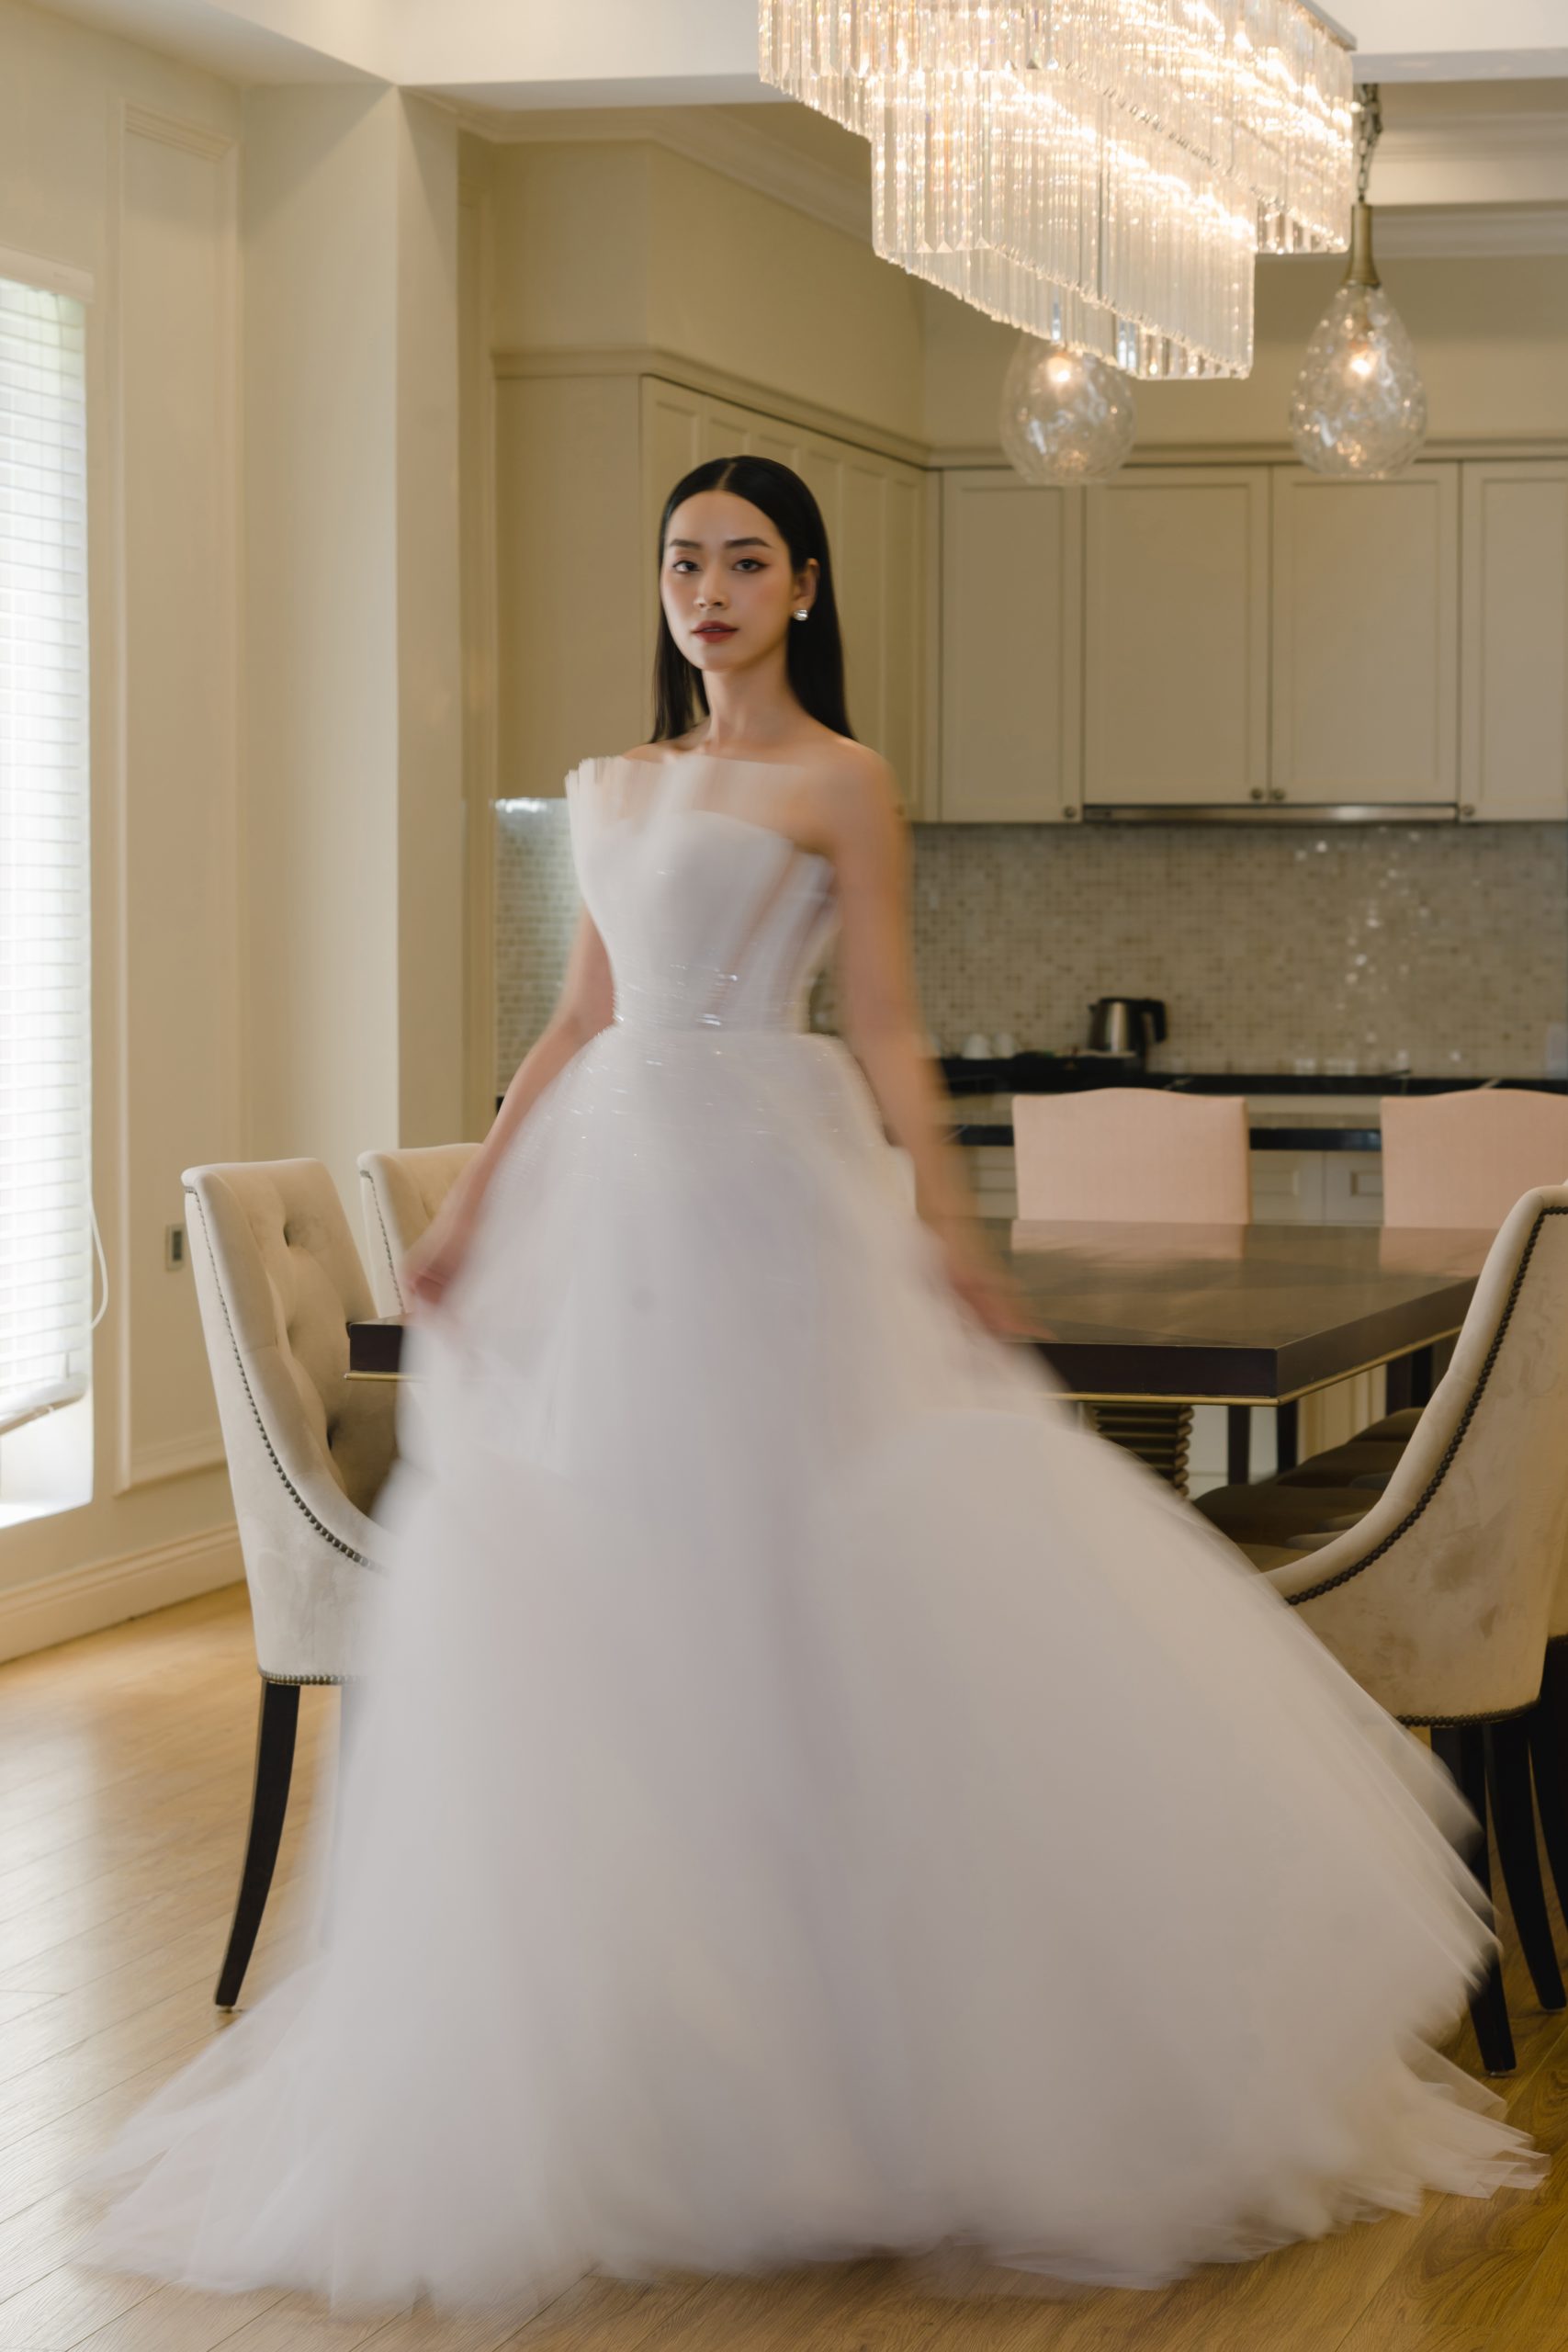 Ether Bridal - Showroom trưng bày hơn 200 mẫu váy cưới có sẵn